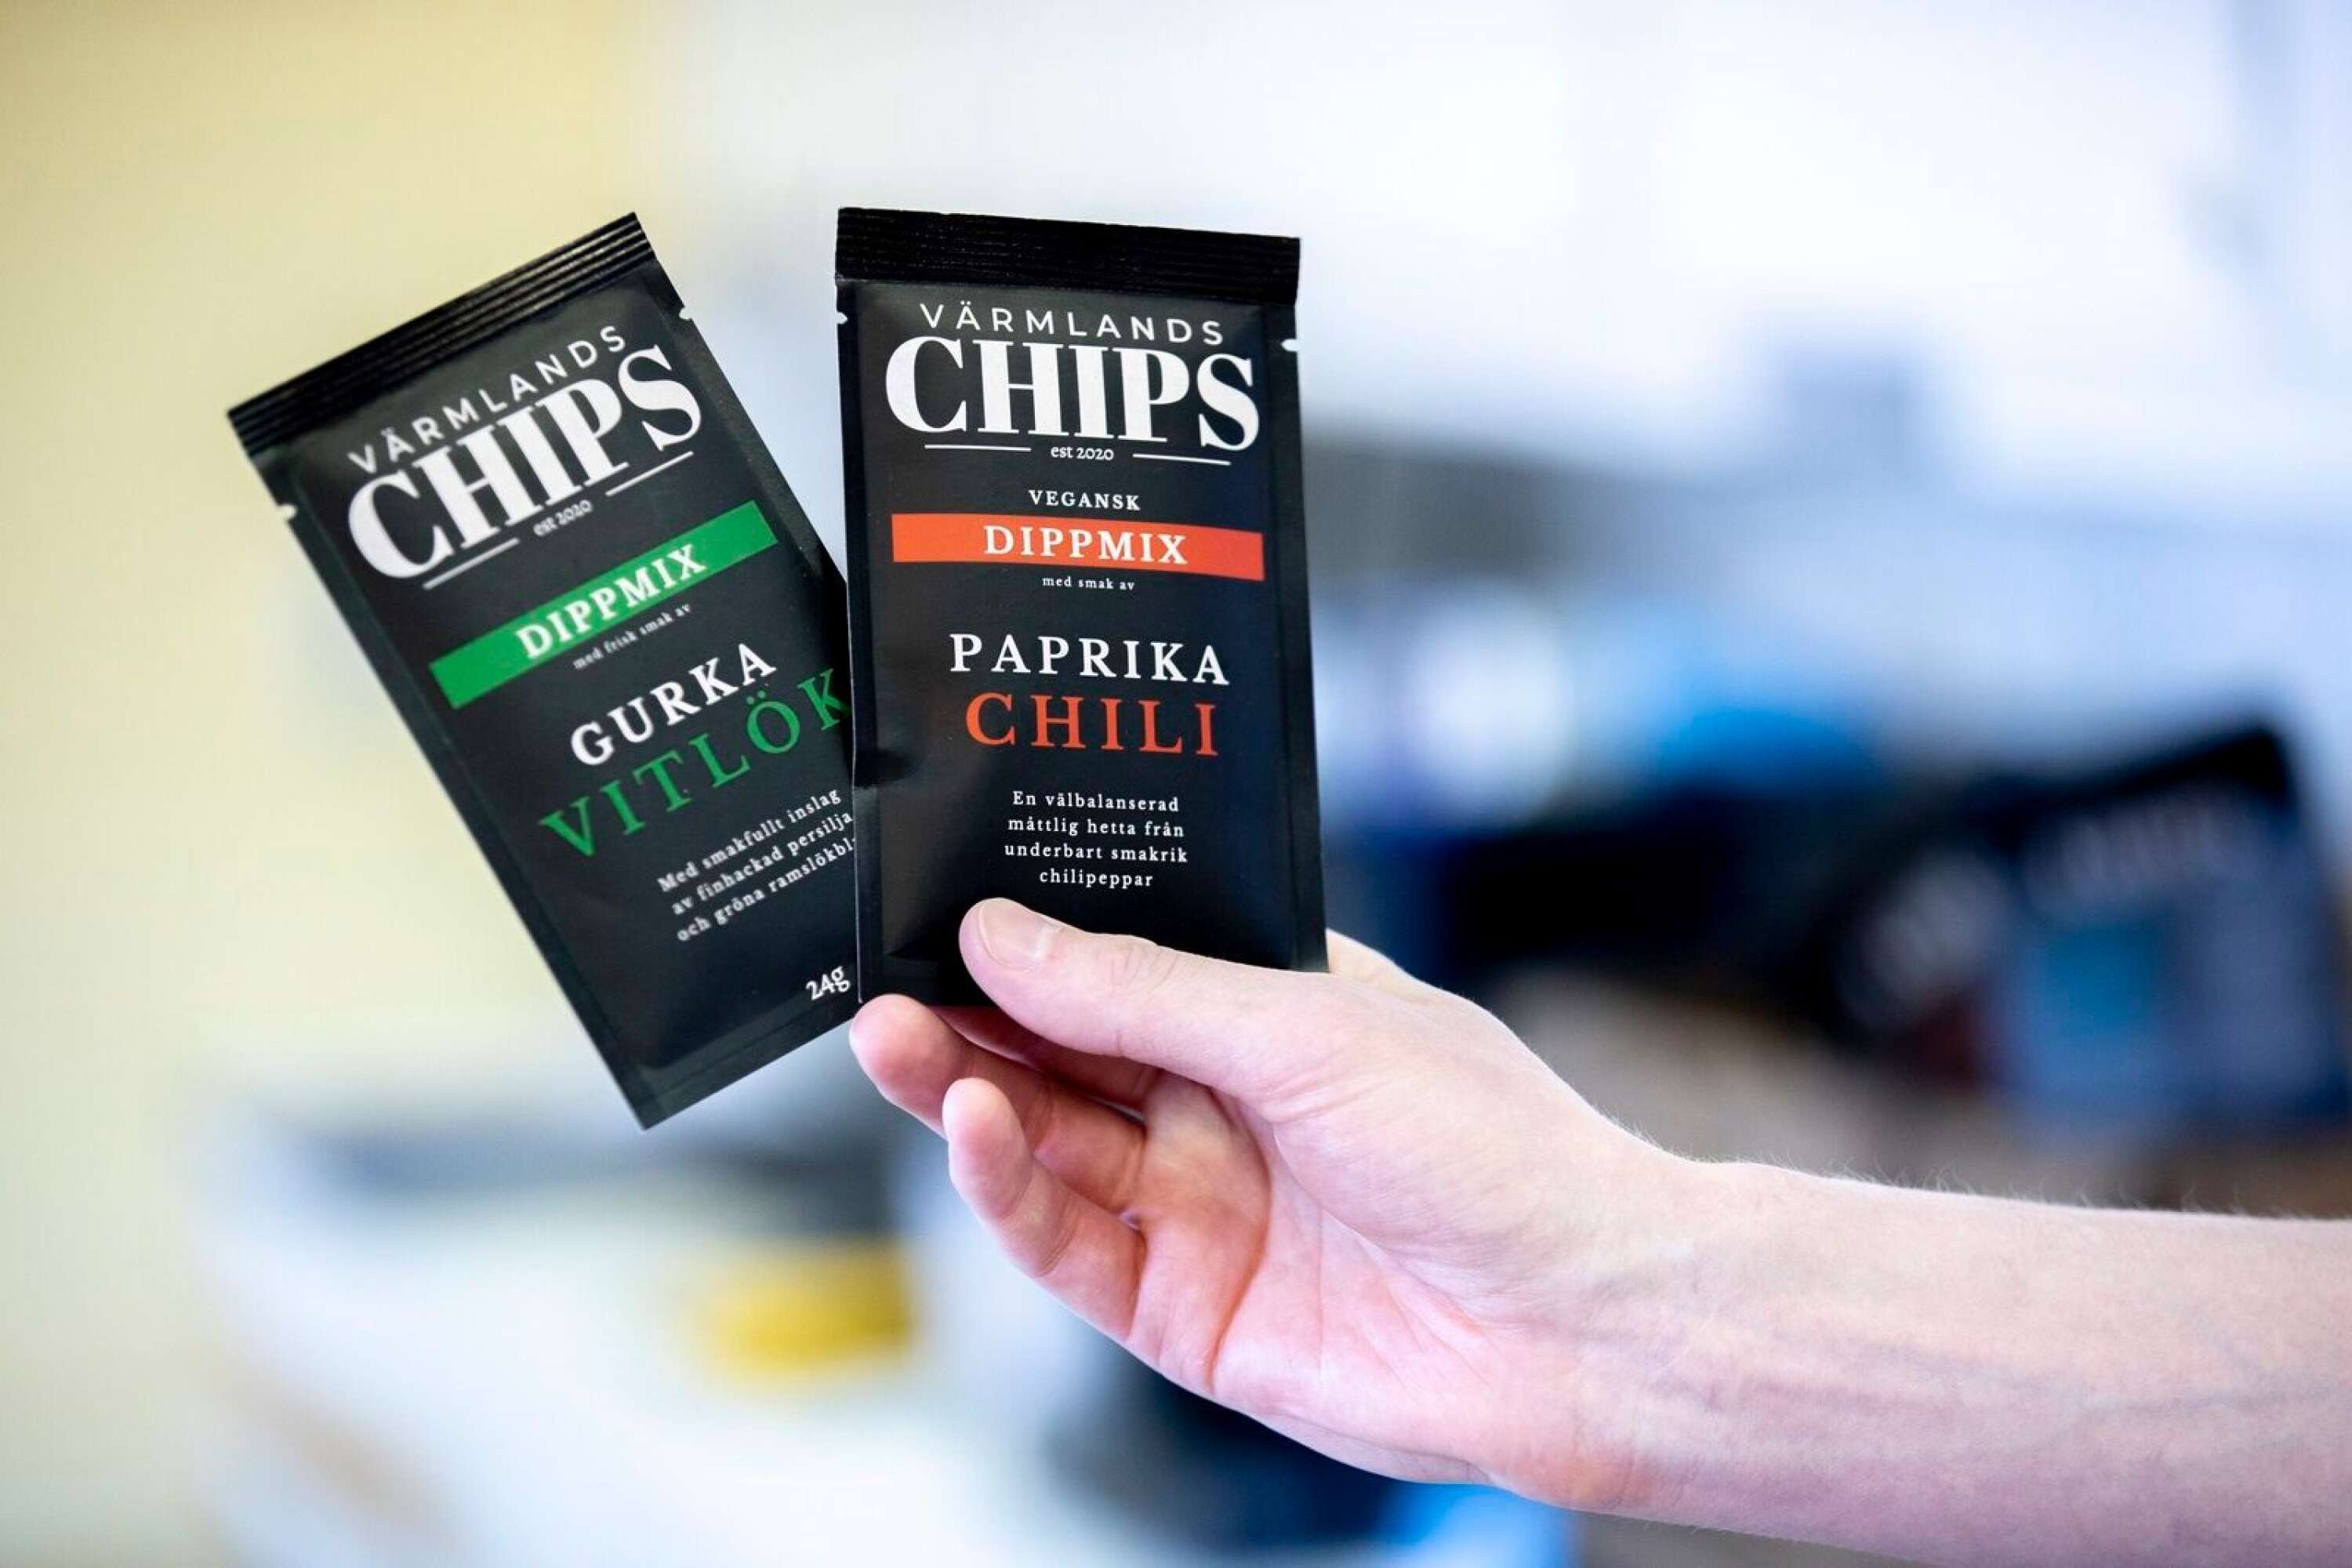 Förutom chips tillverkar Värmlandschips även de två dippmixerna vitlök/gurka och chili/paprika.